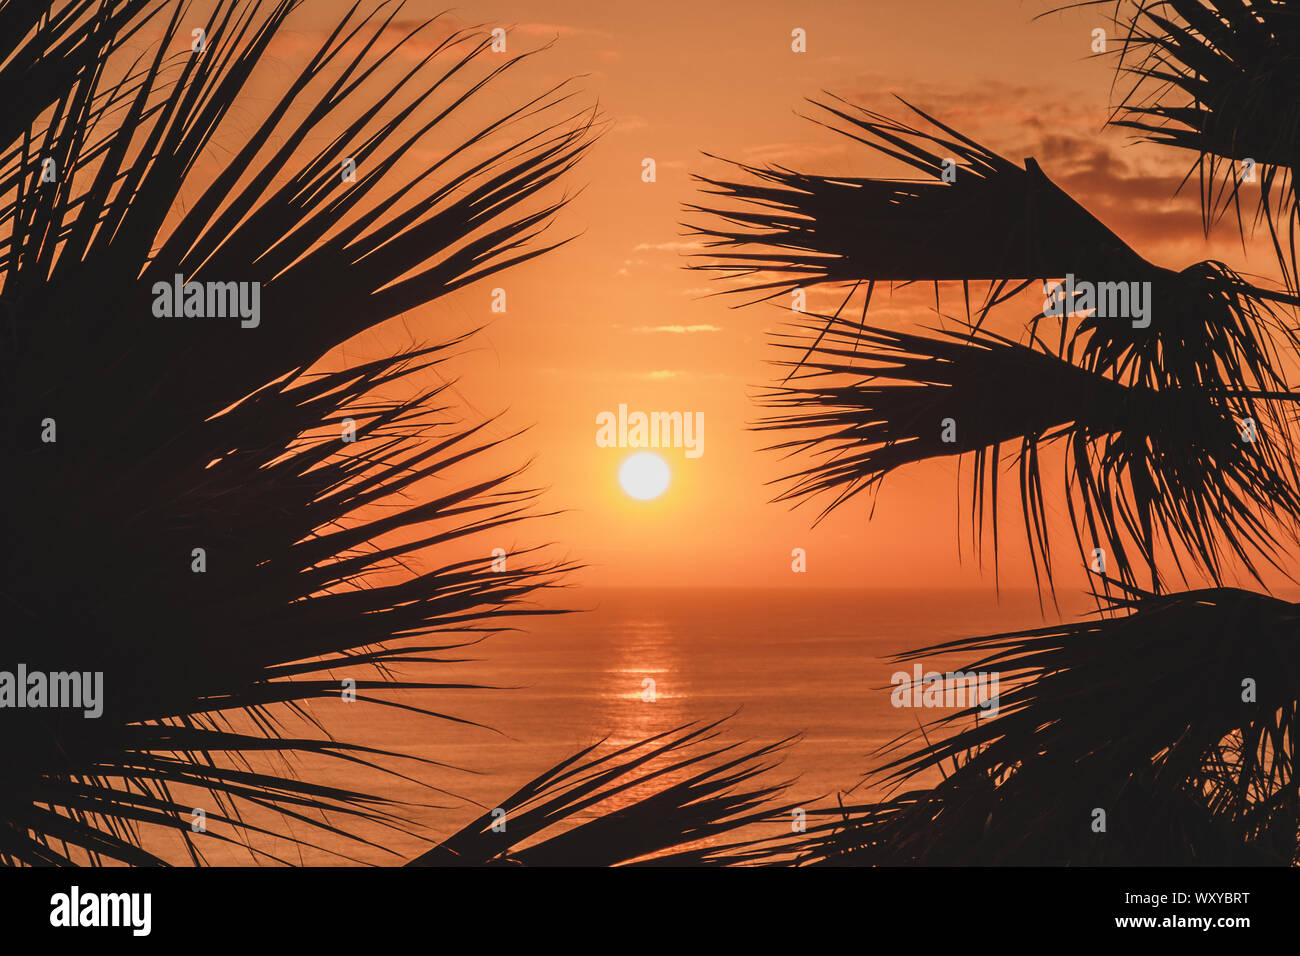 Ciel coucher de soleil panoramique avec fond de l'océan et palm tree silhouette Banque D'Images